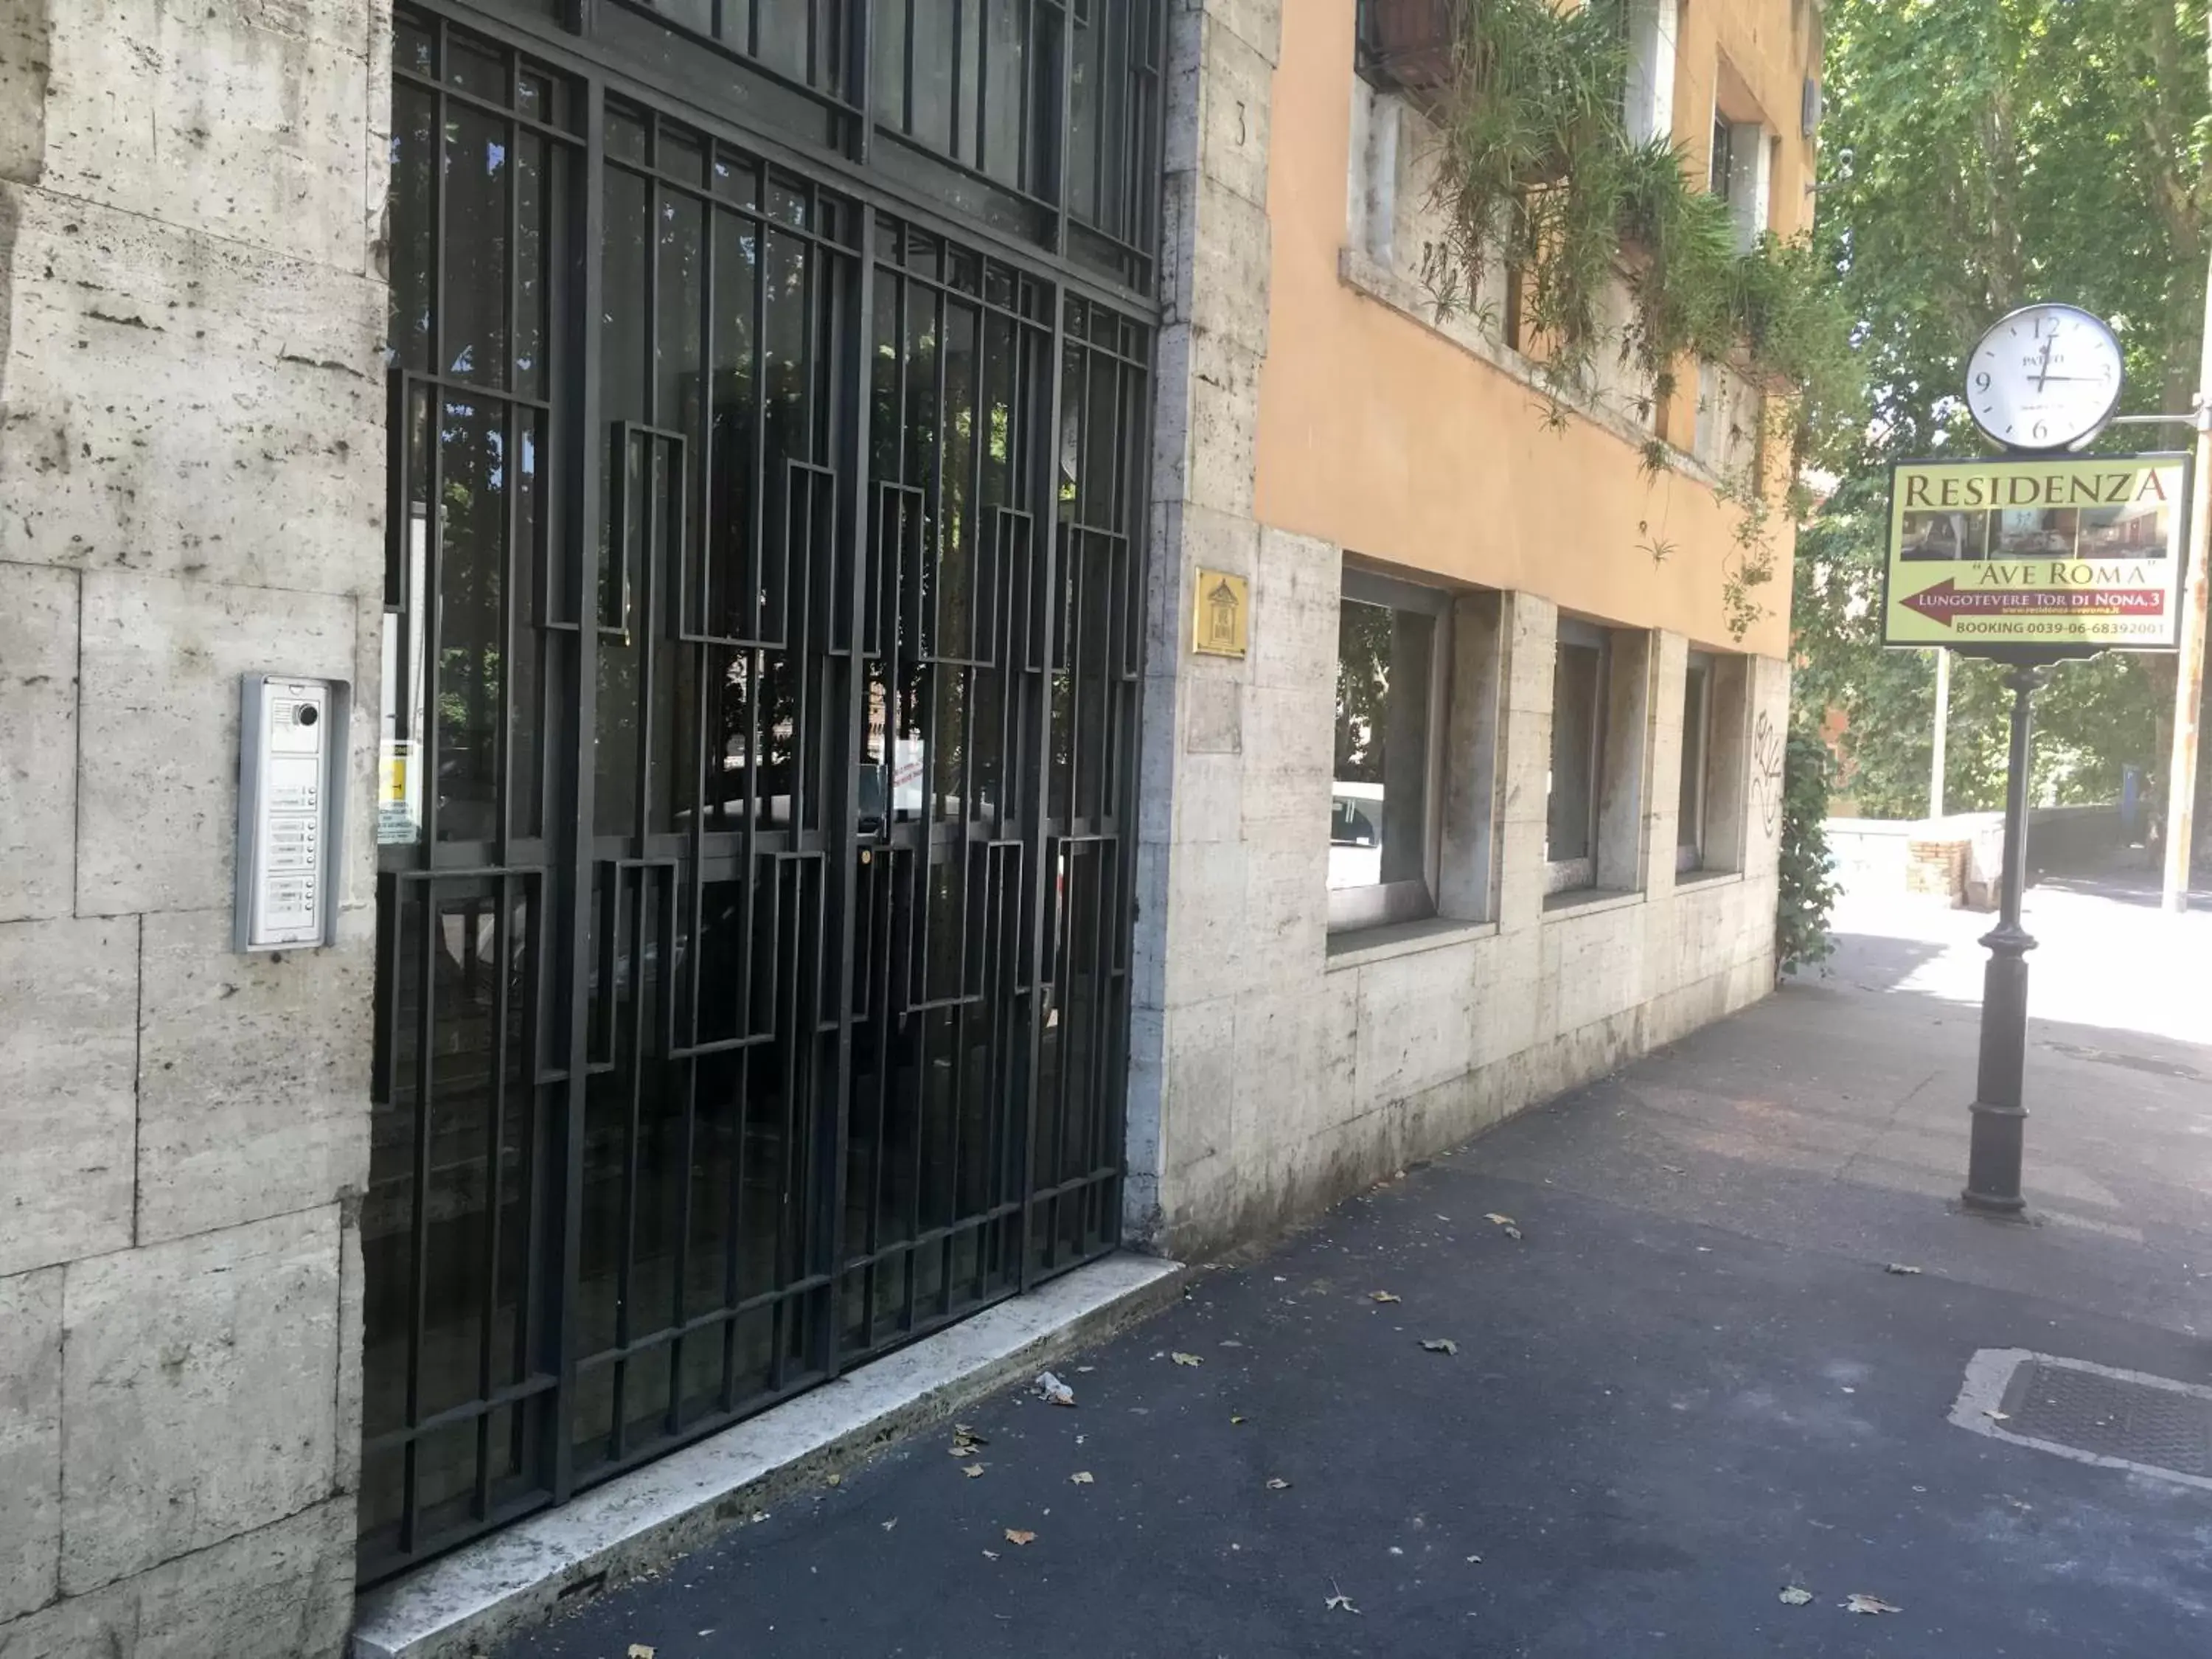 Facade/entrance in Residenza Ave Roma